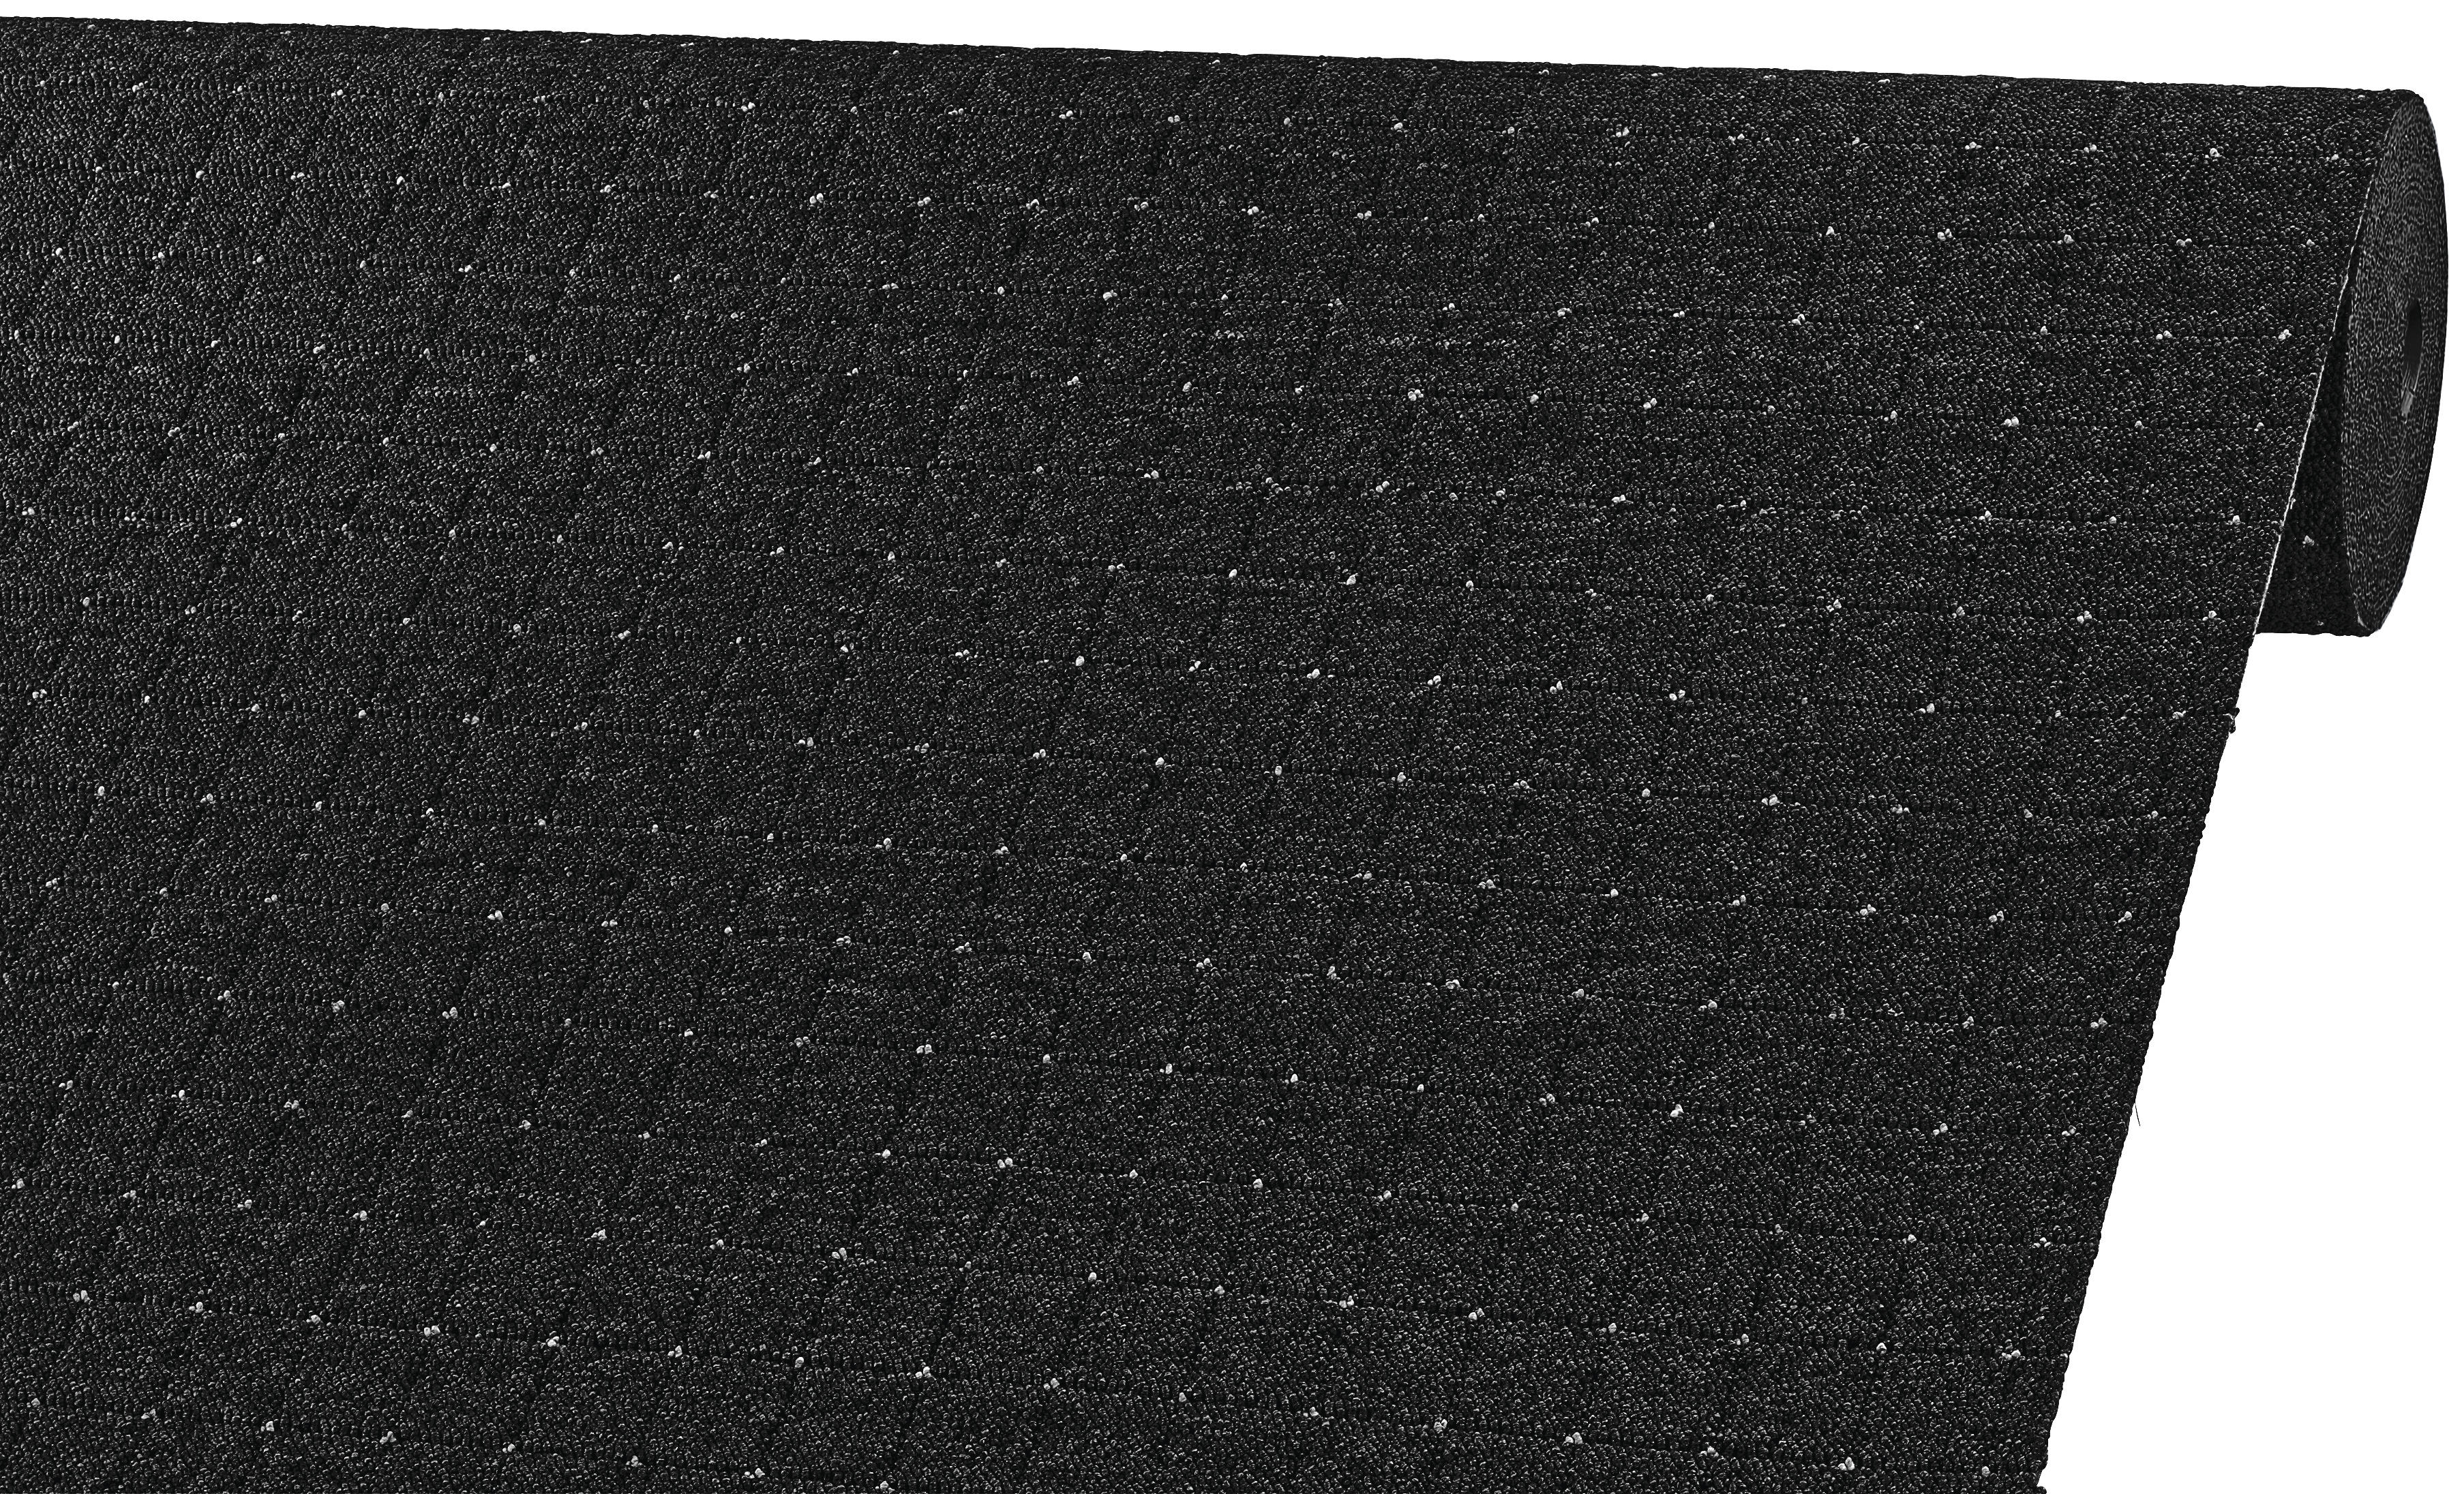 Nadelfilz teppichboden - Die ausgezeichnetesten Nadelfilz teppichboden verglichen